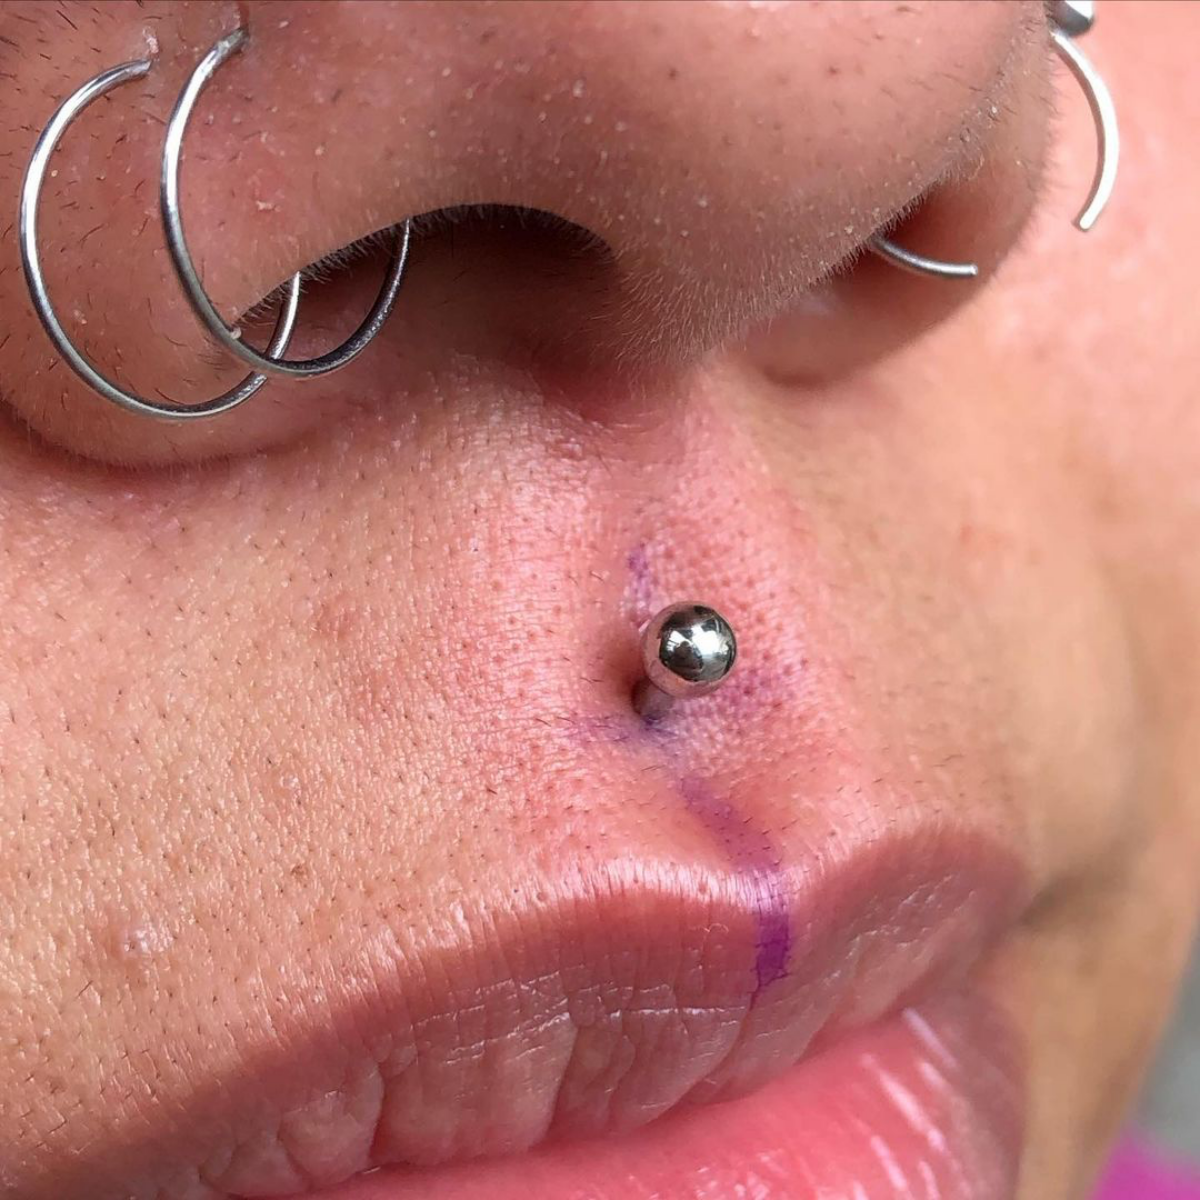 2 medusa piercing stainless steel